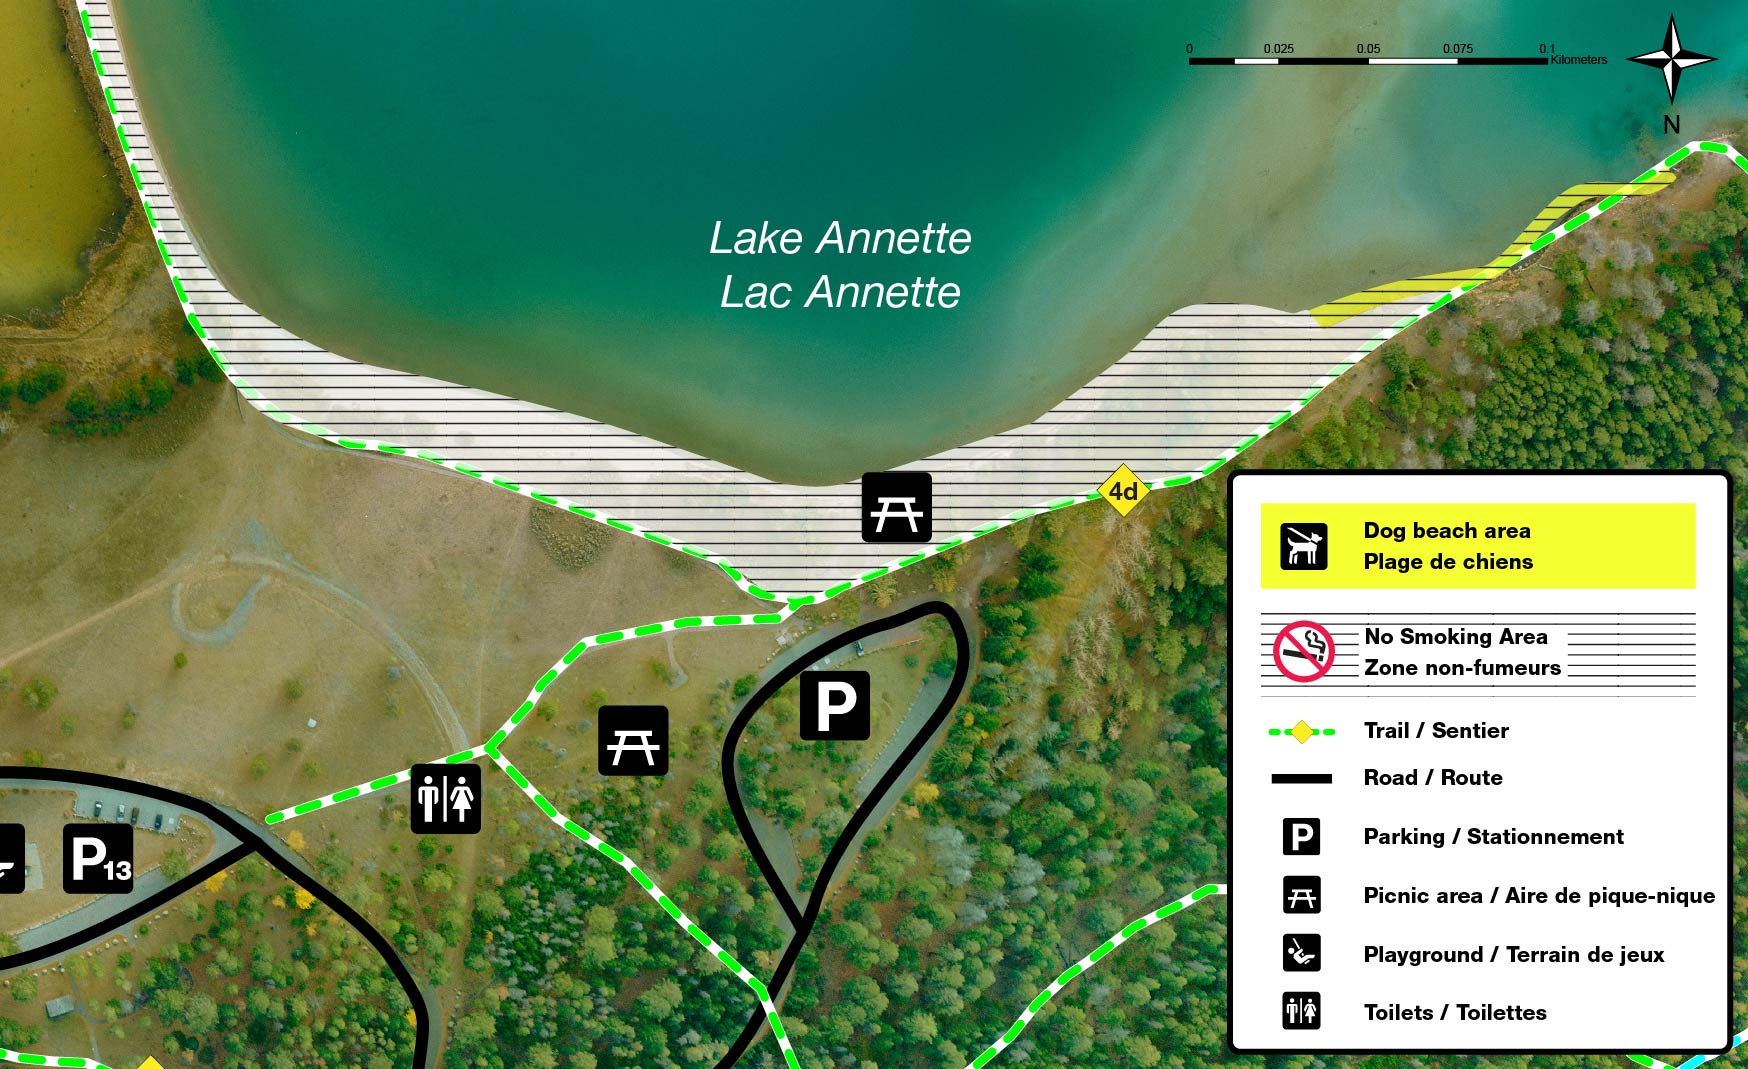 Lake Annette Main beach